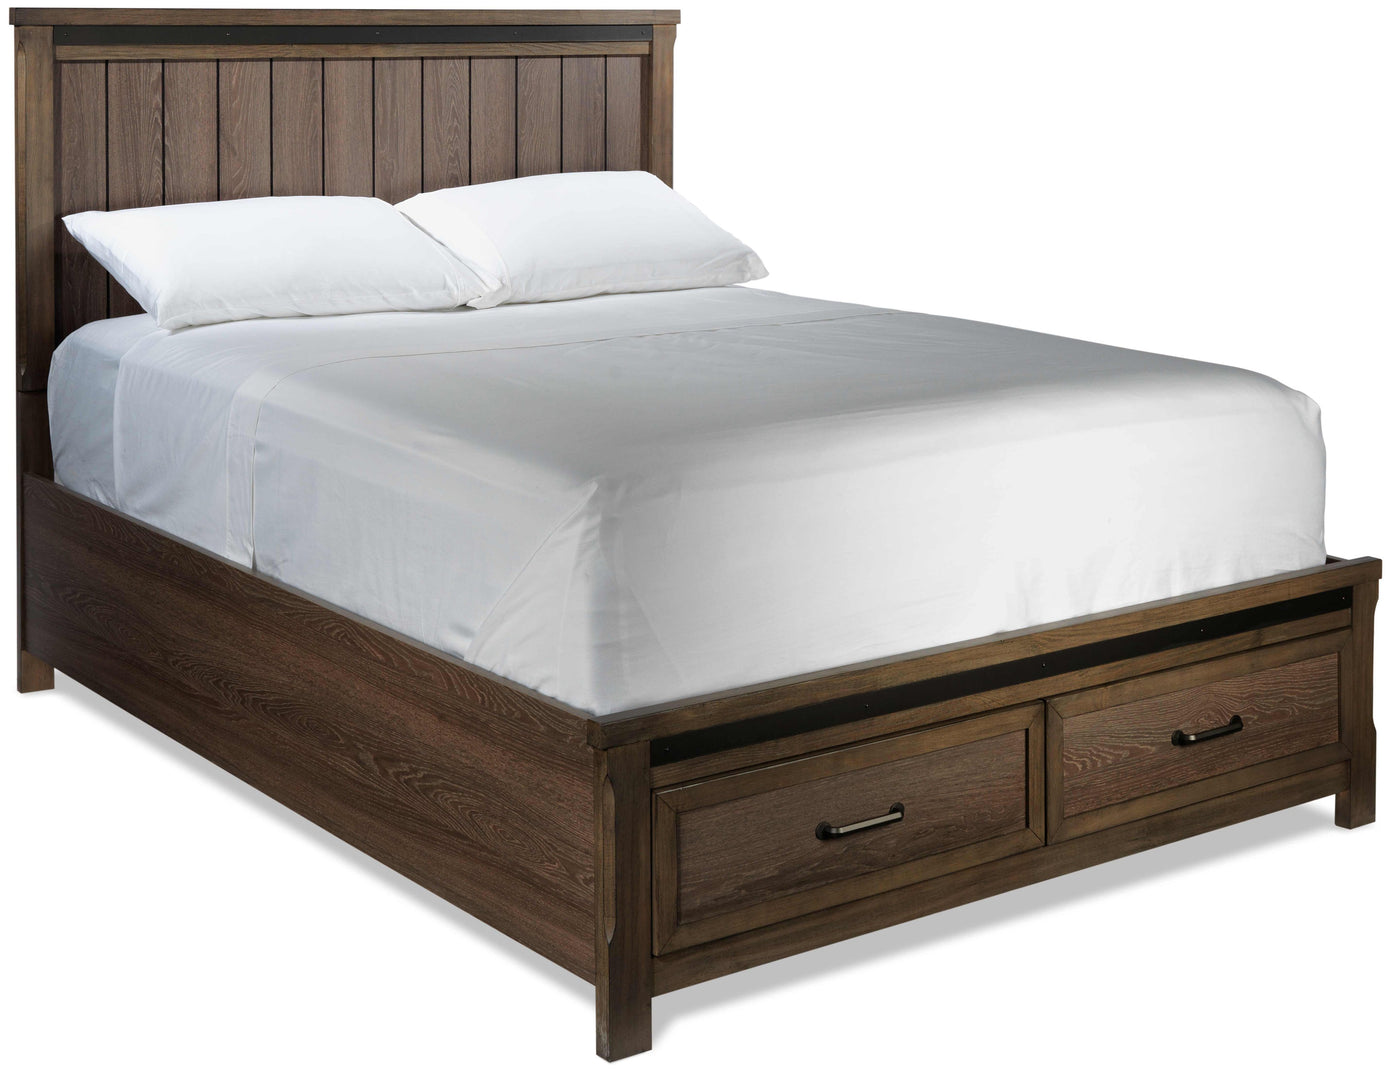 Rossco 3-Piece King Storage Bed - Rustic Oak